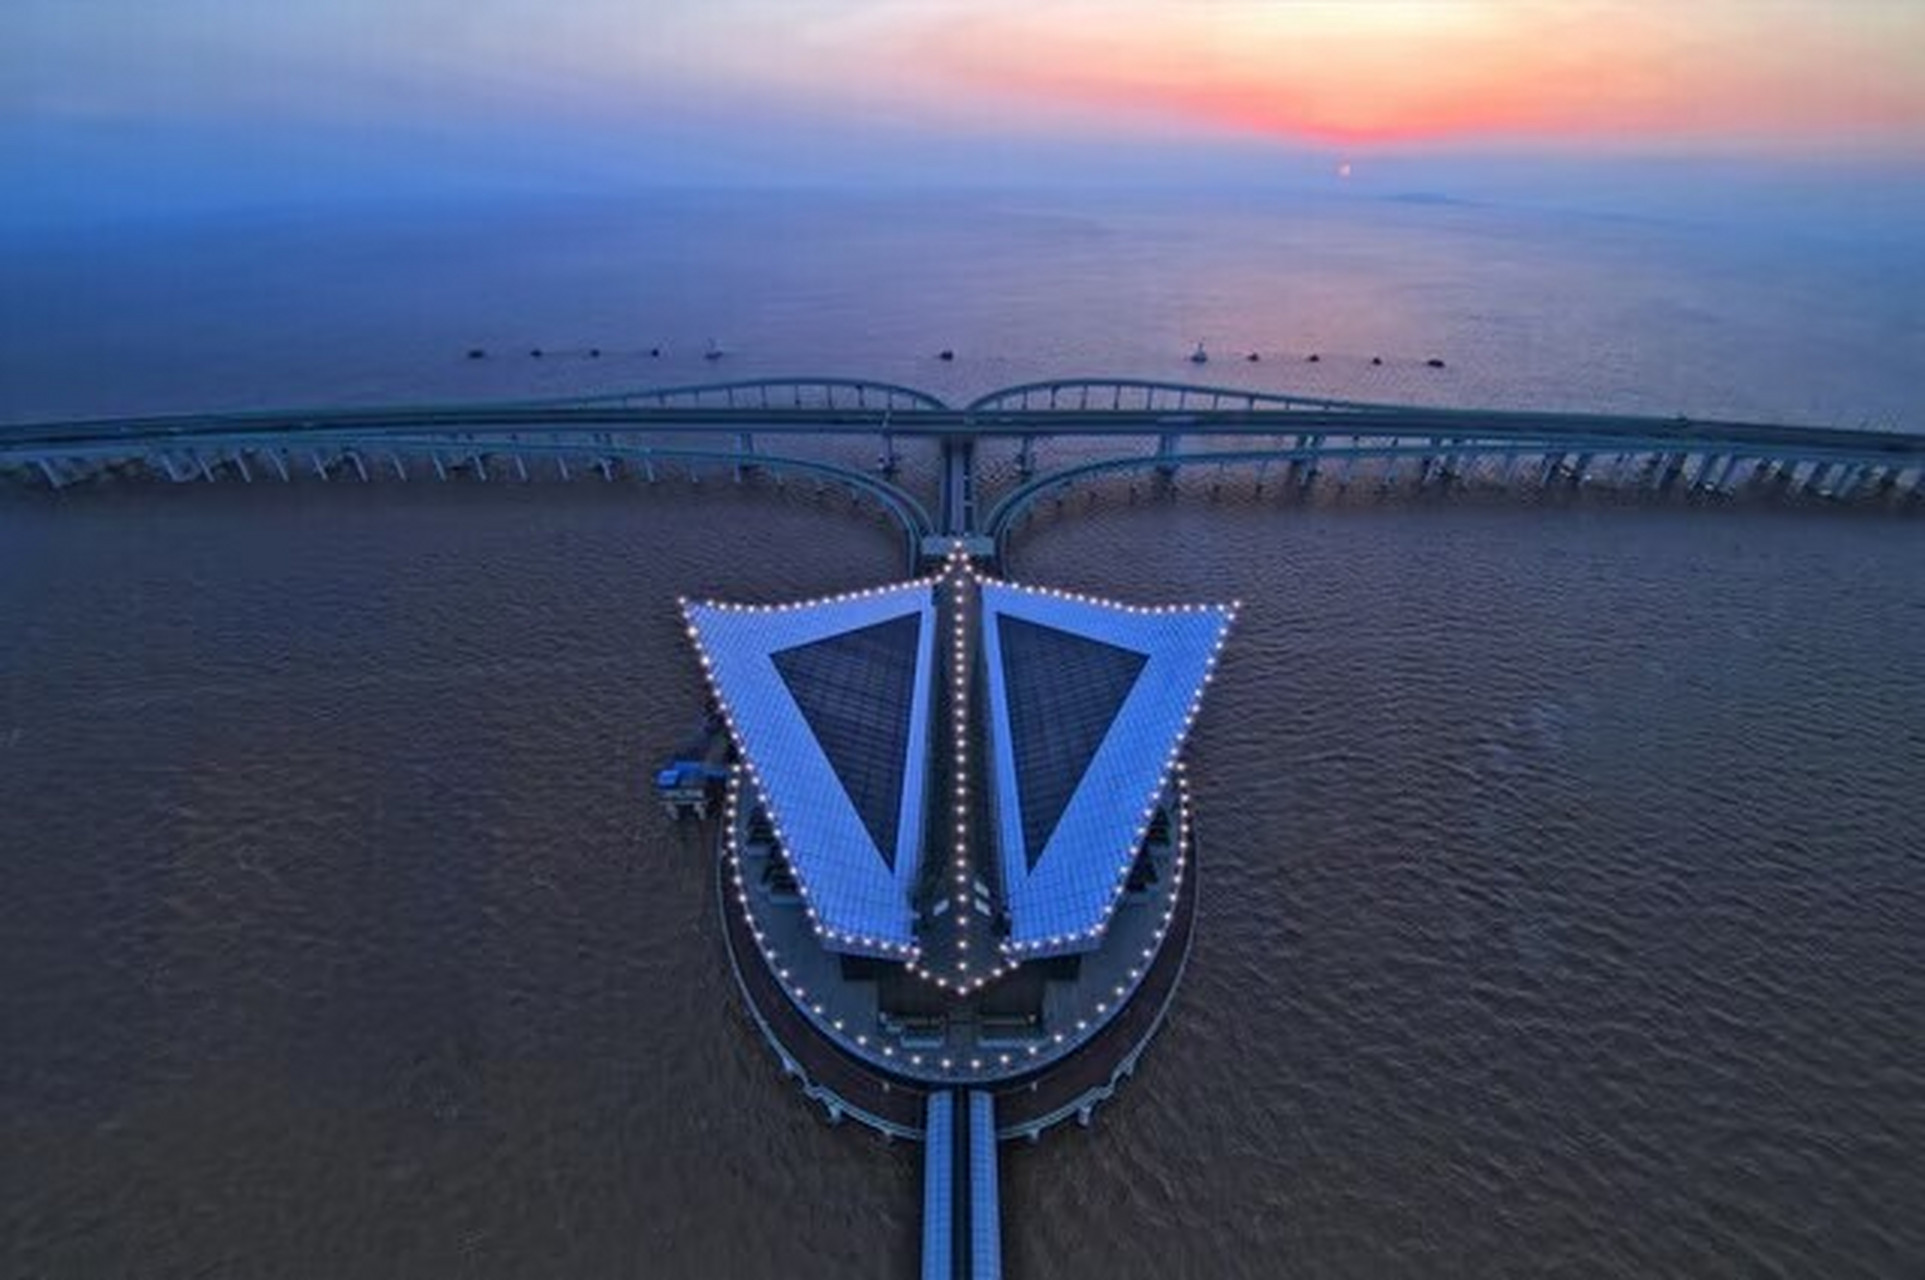 探寻杭州湾跨海大桥——简介 杭州湾跨海大桥位于浙江省杭州湾之上,是